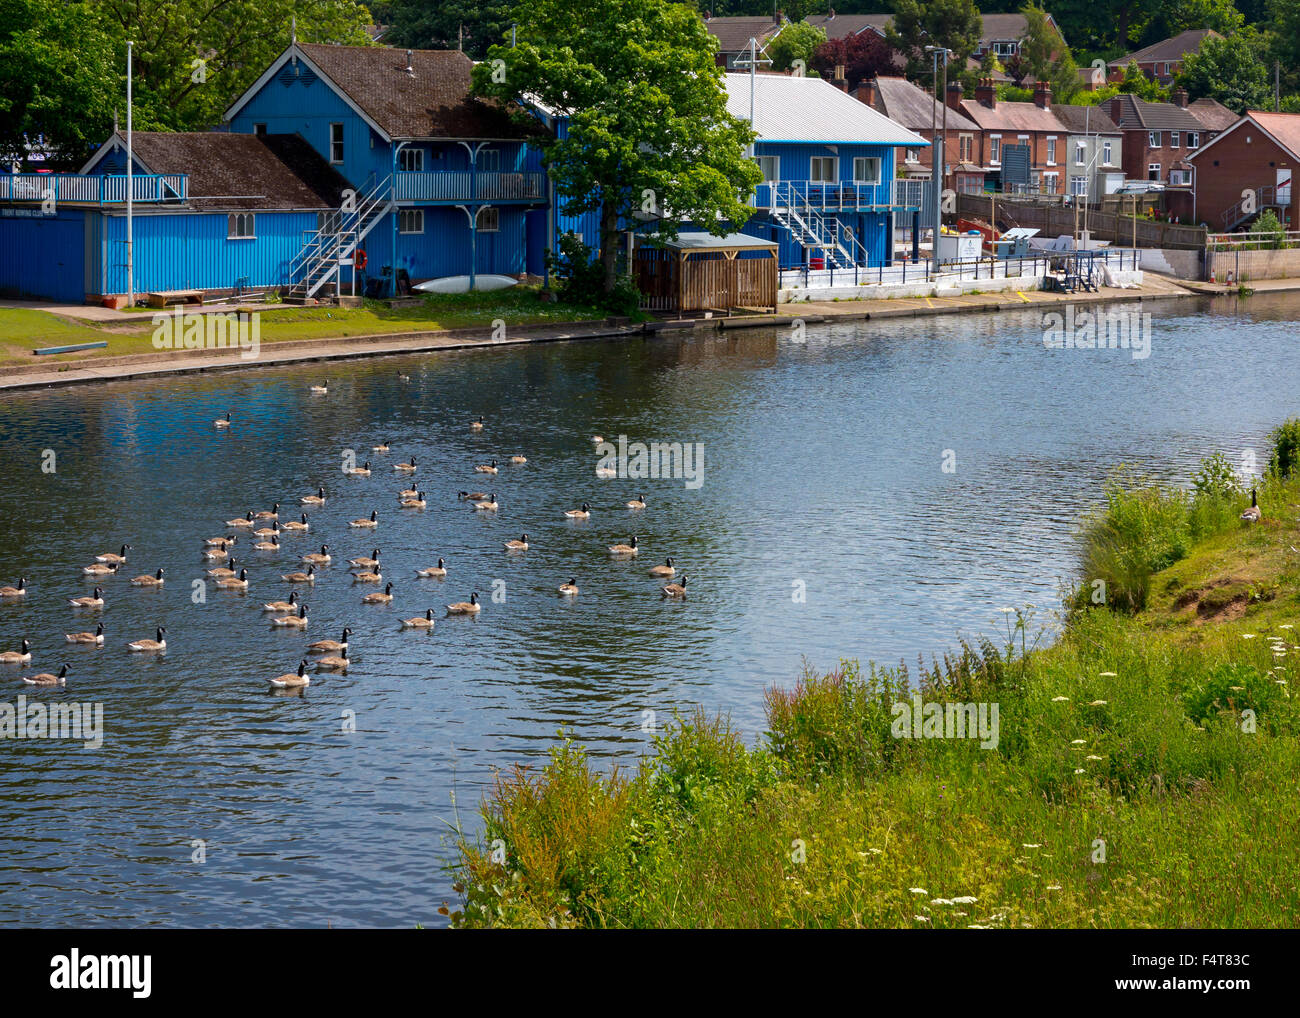 Troupeau d'oies sur la rivière Trent à Burton upon Trent Staffordshire England UK Banque D'Images